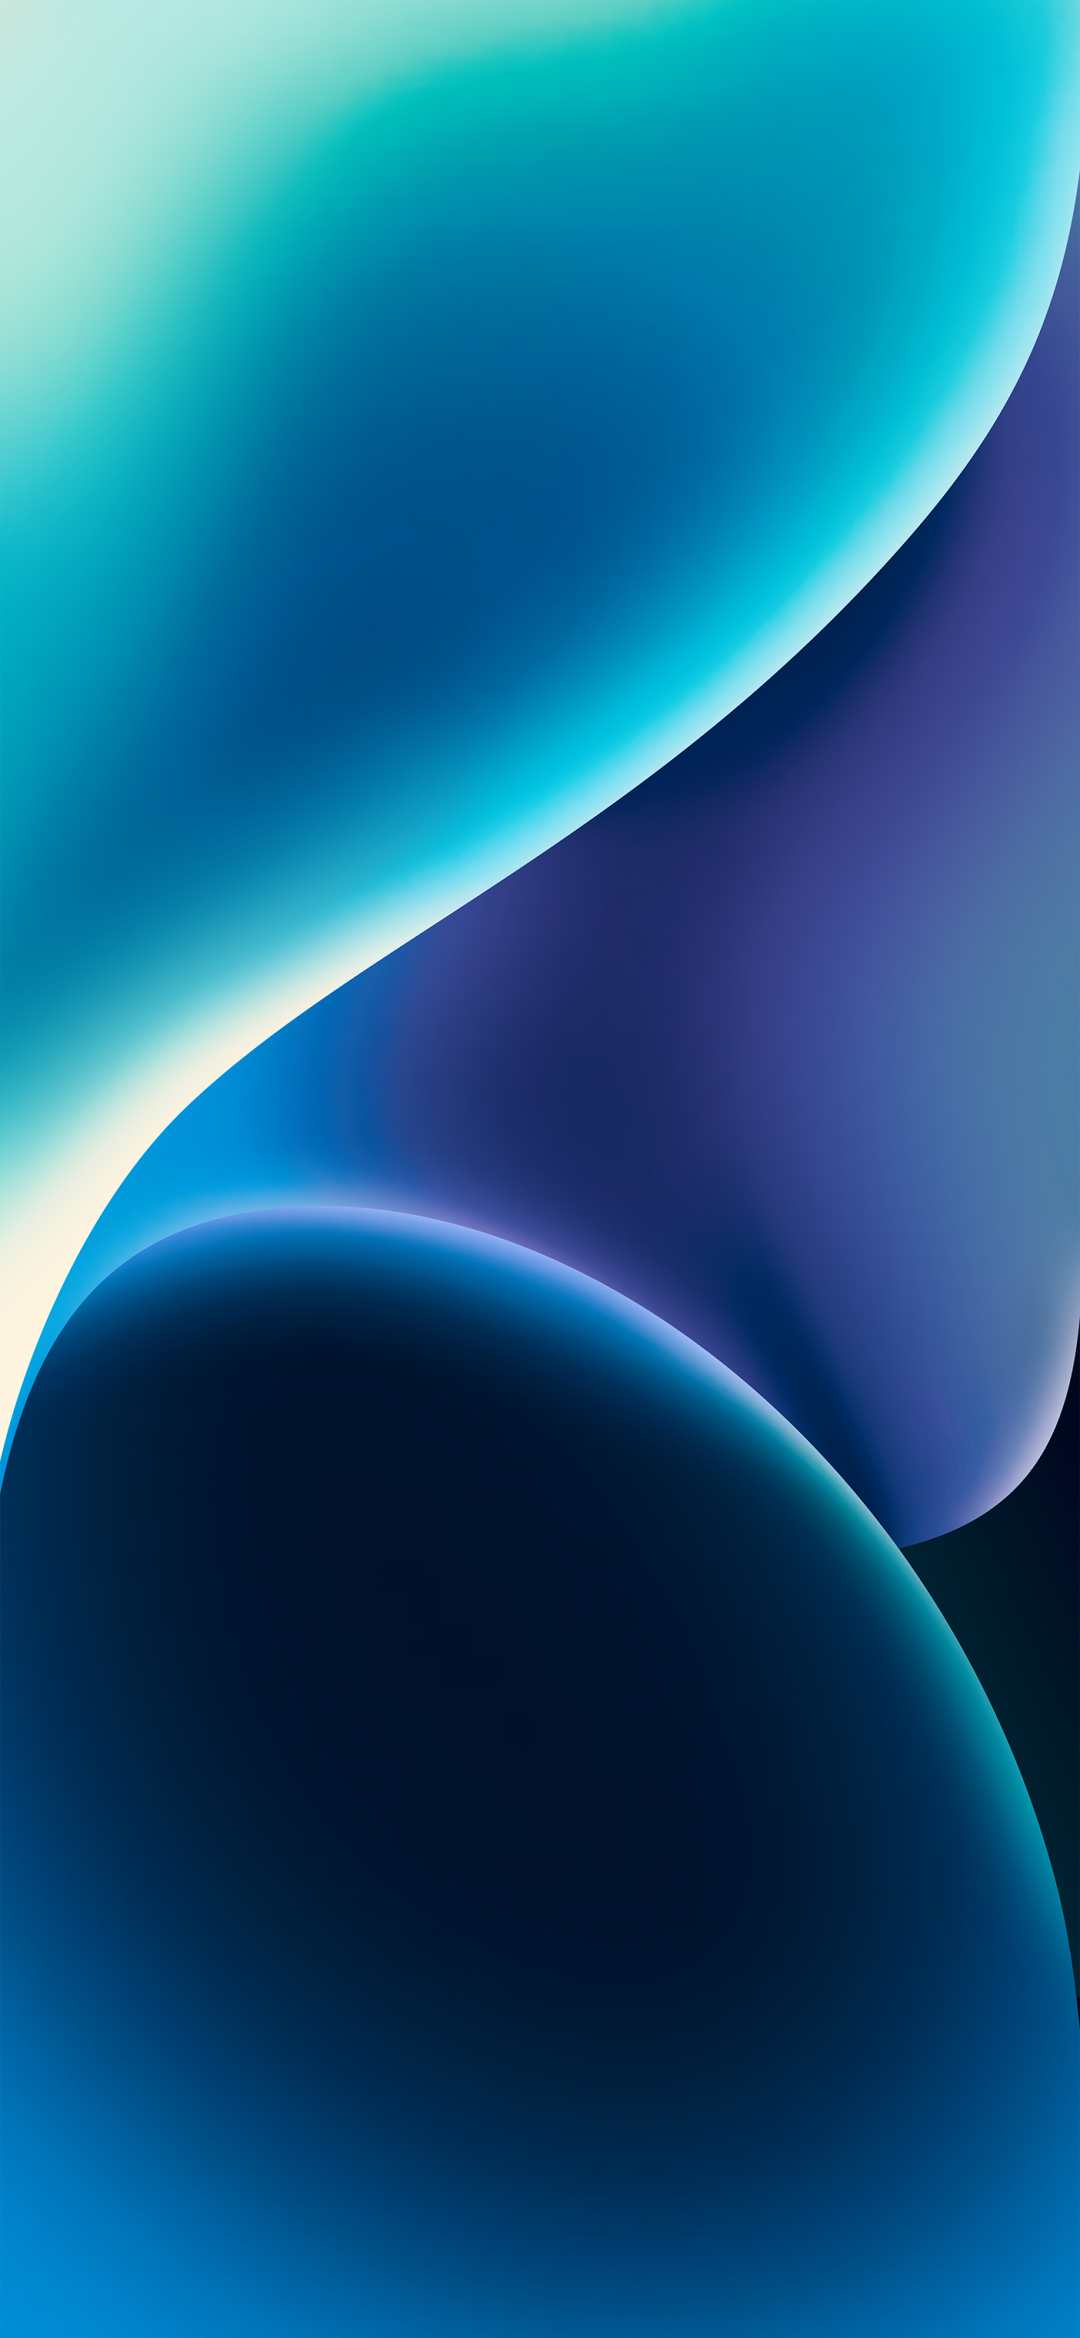 iPadOS161 – Dynamic blue by Hk3ToN | Zollotech